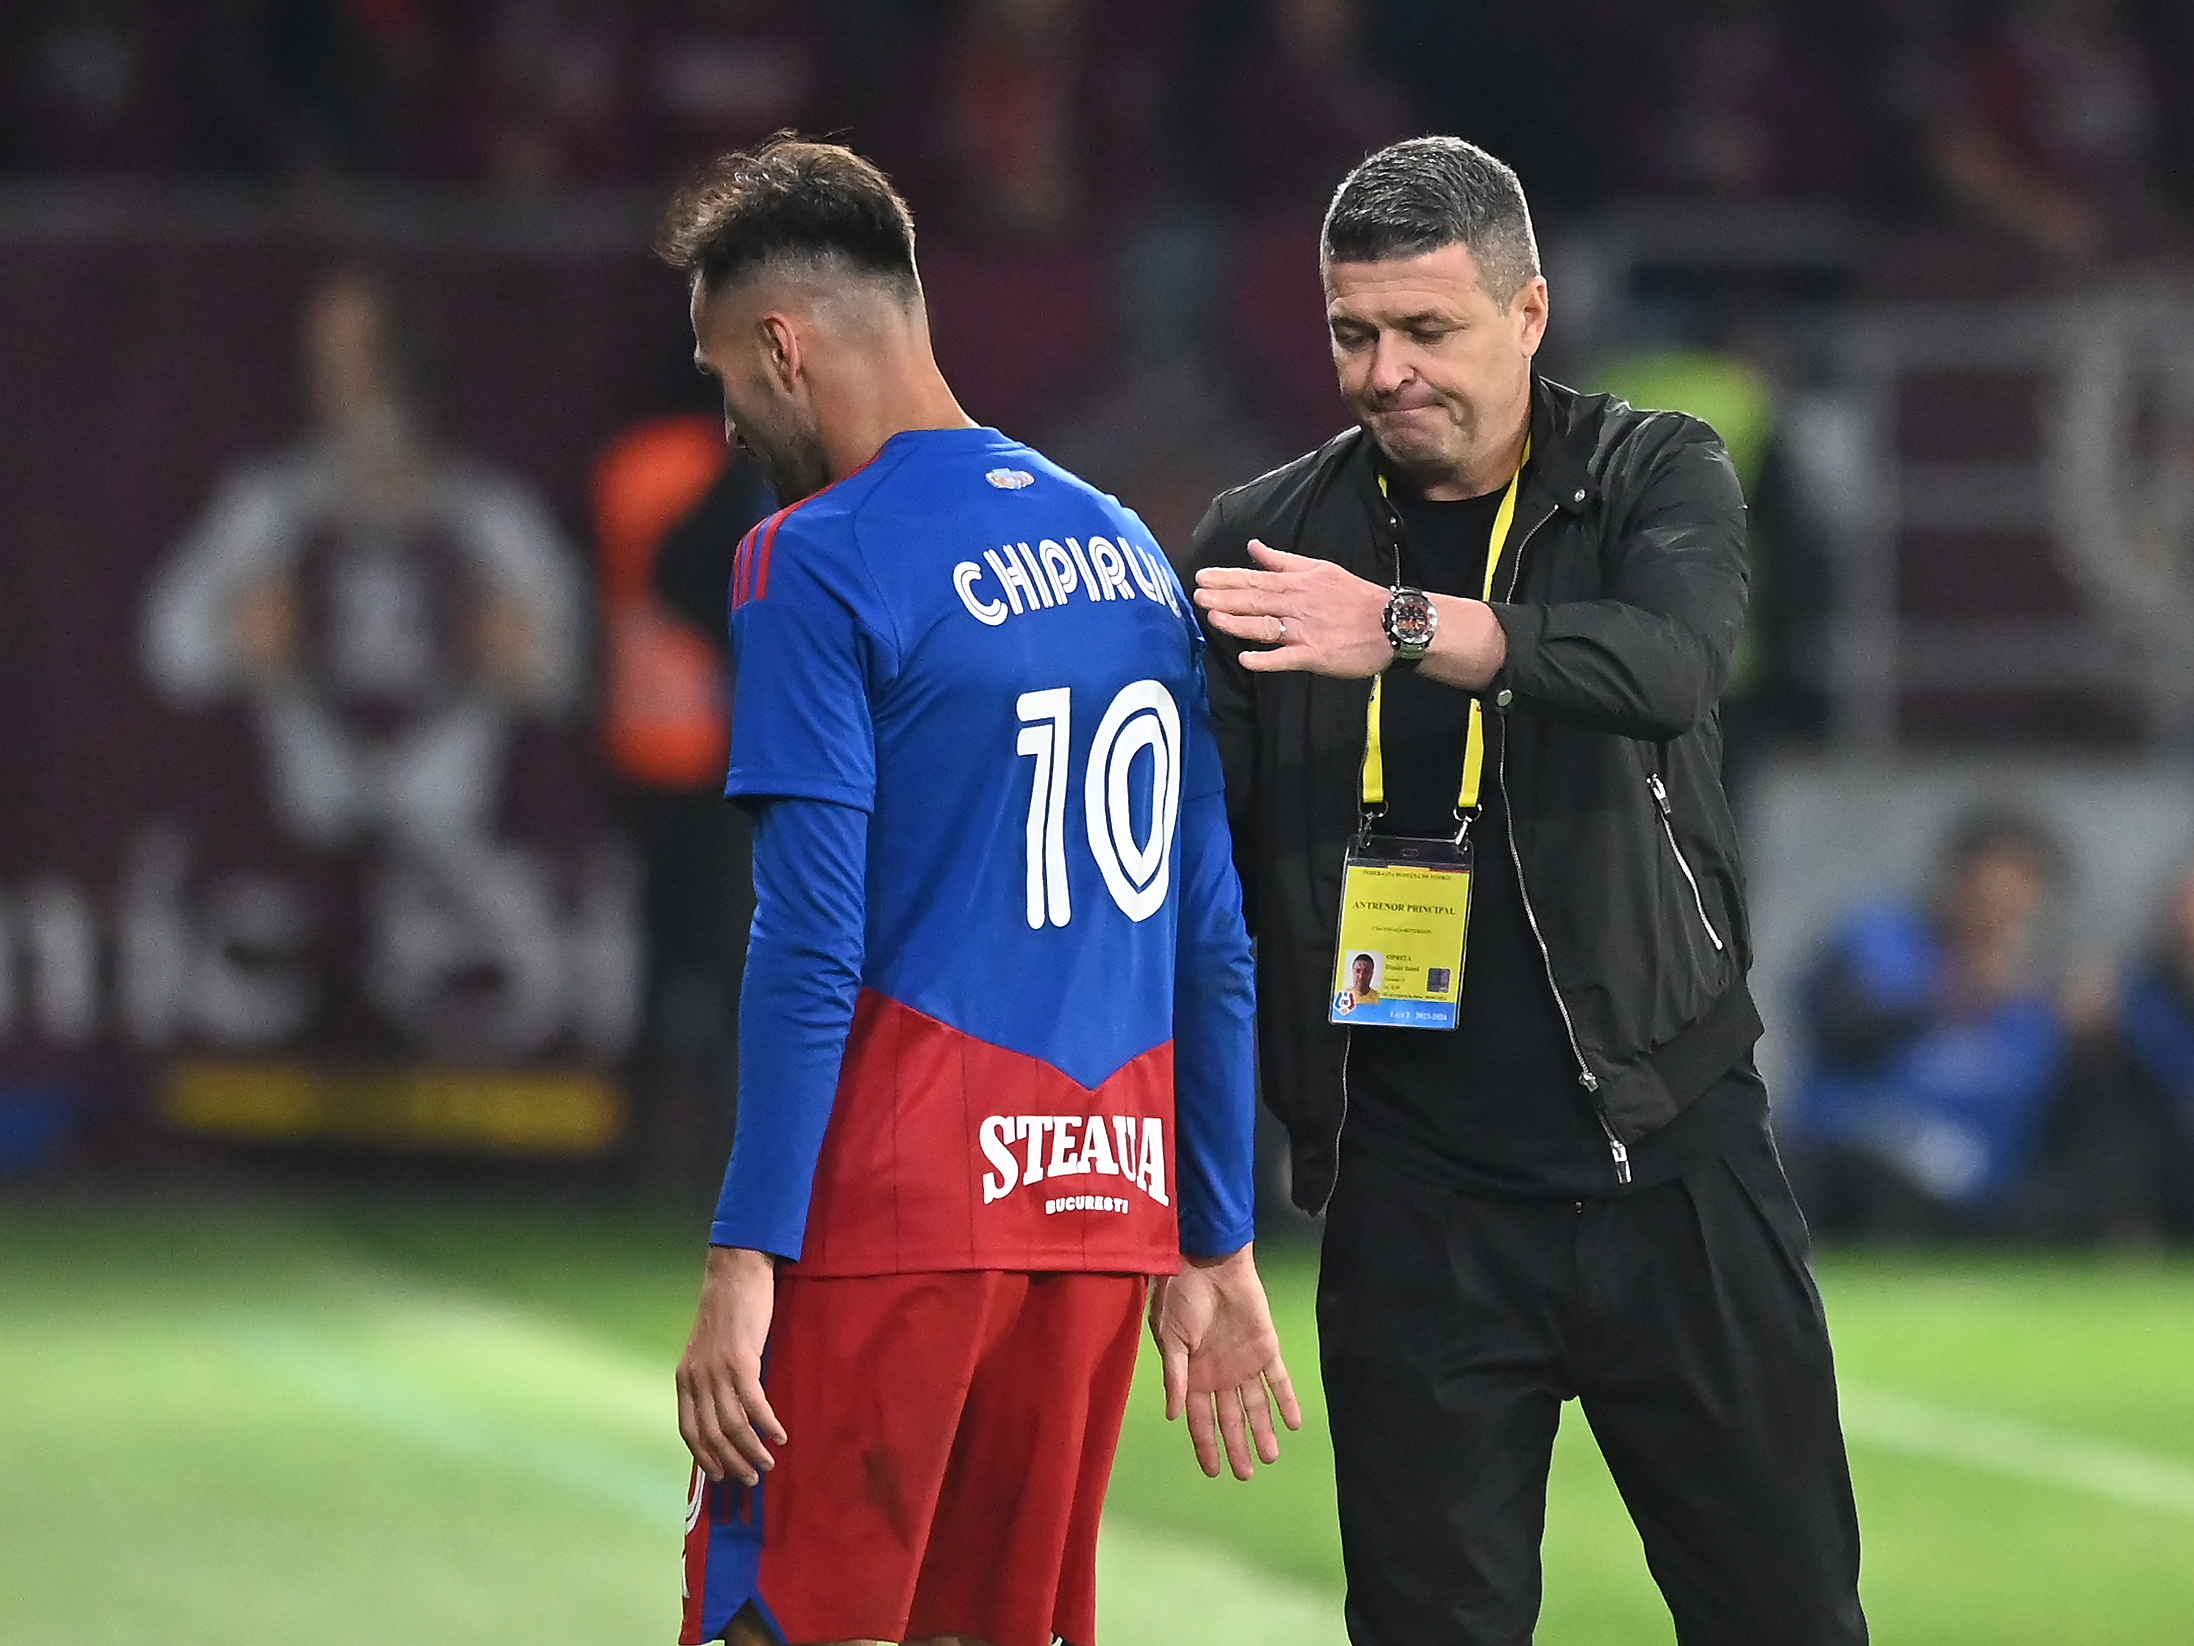 CSA Steaua, de neînțeles! Conducerea i-a setat un obiectiv diferit lui  Daniel Oprița față de cel impus jucătorilor